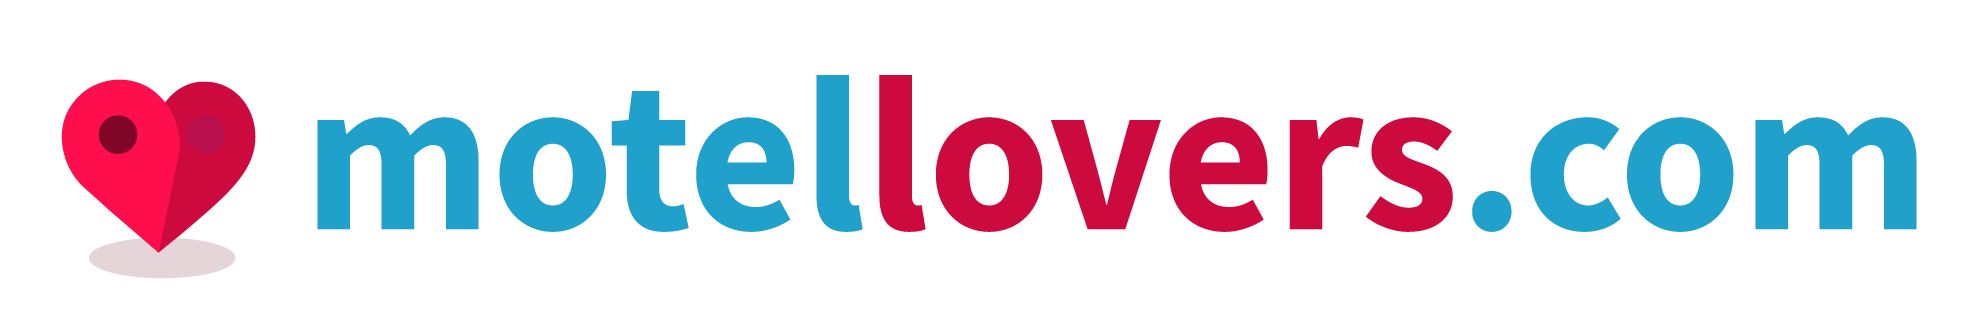 MotelLovers.com Logo